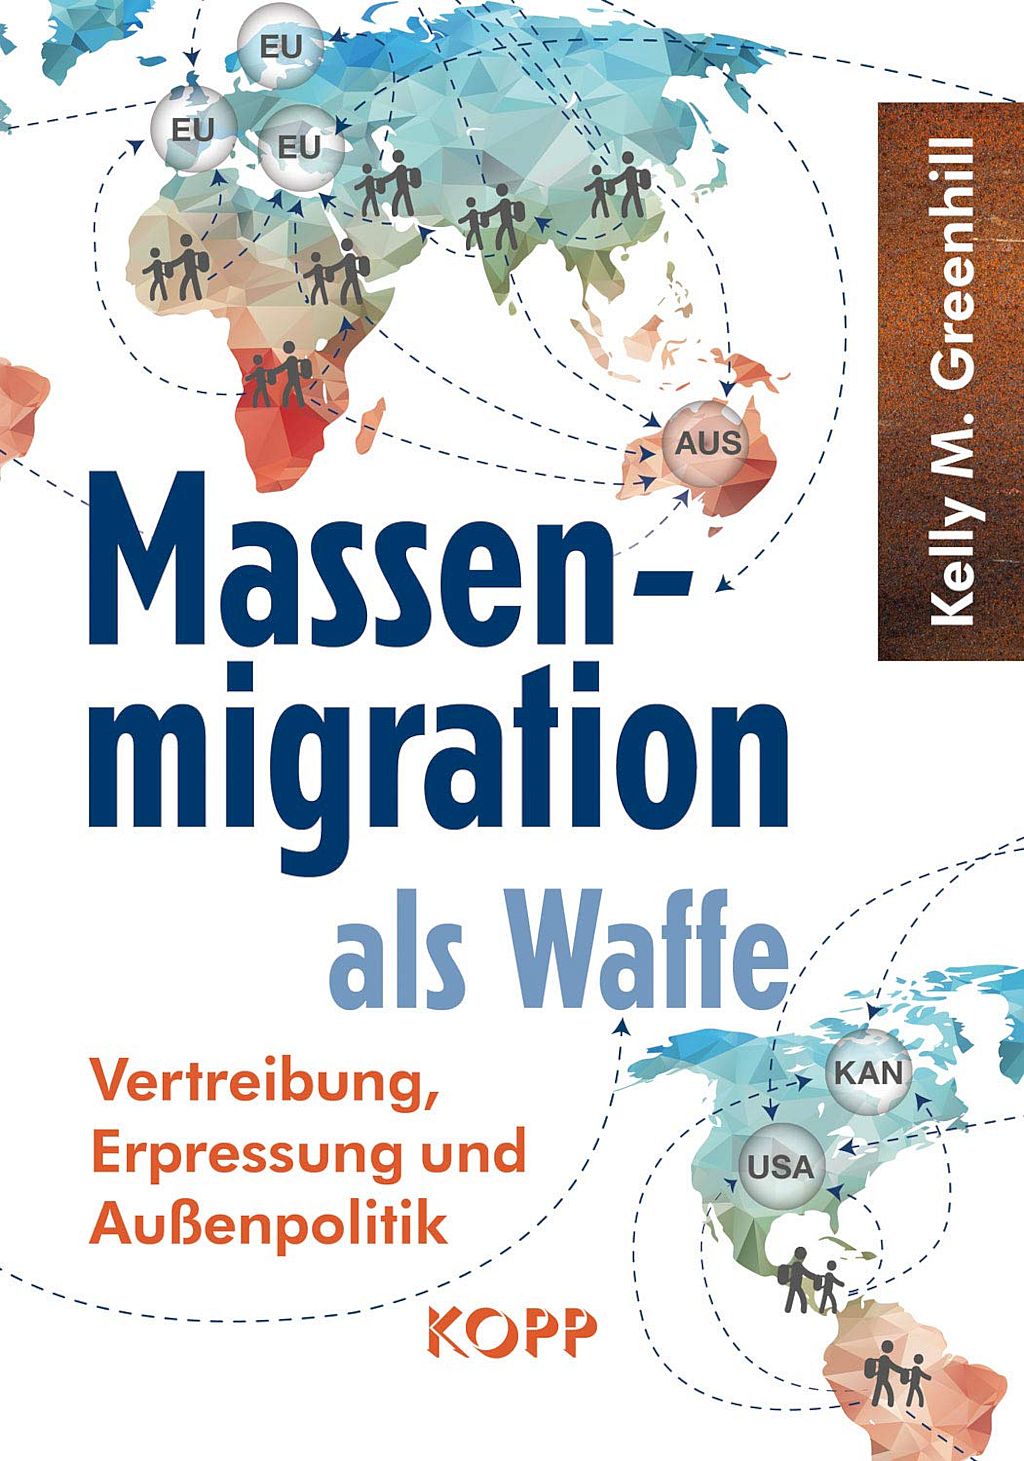 La migración masiva como arma: expulsión, chantaje y política exterior